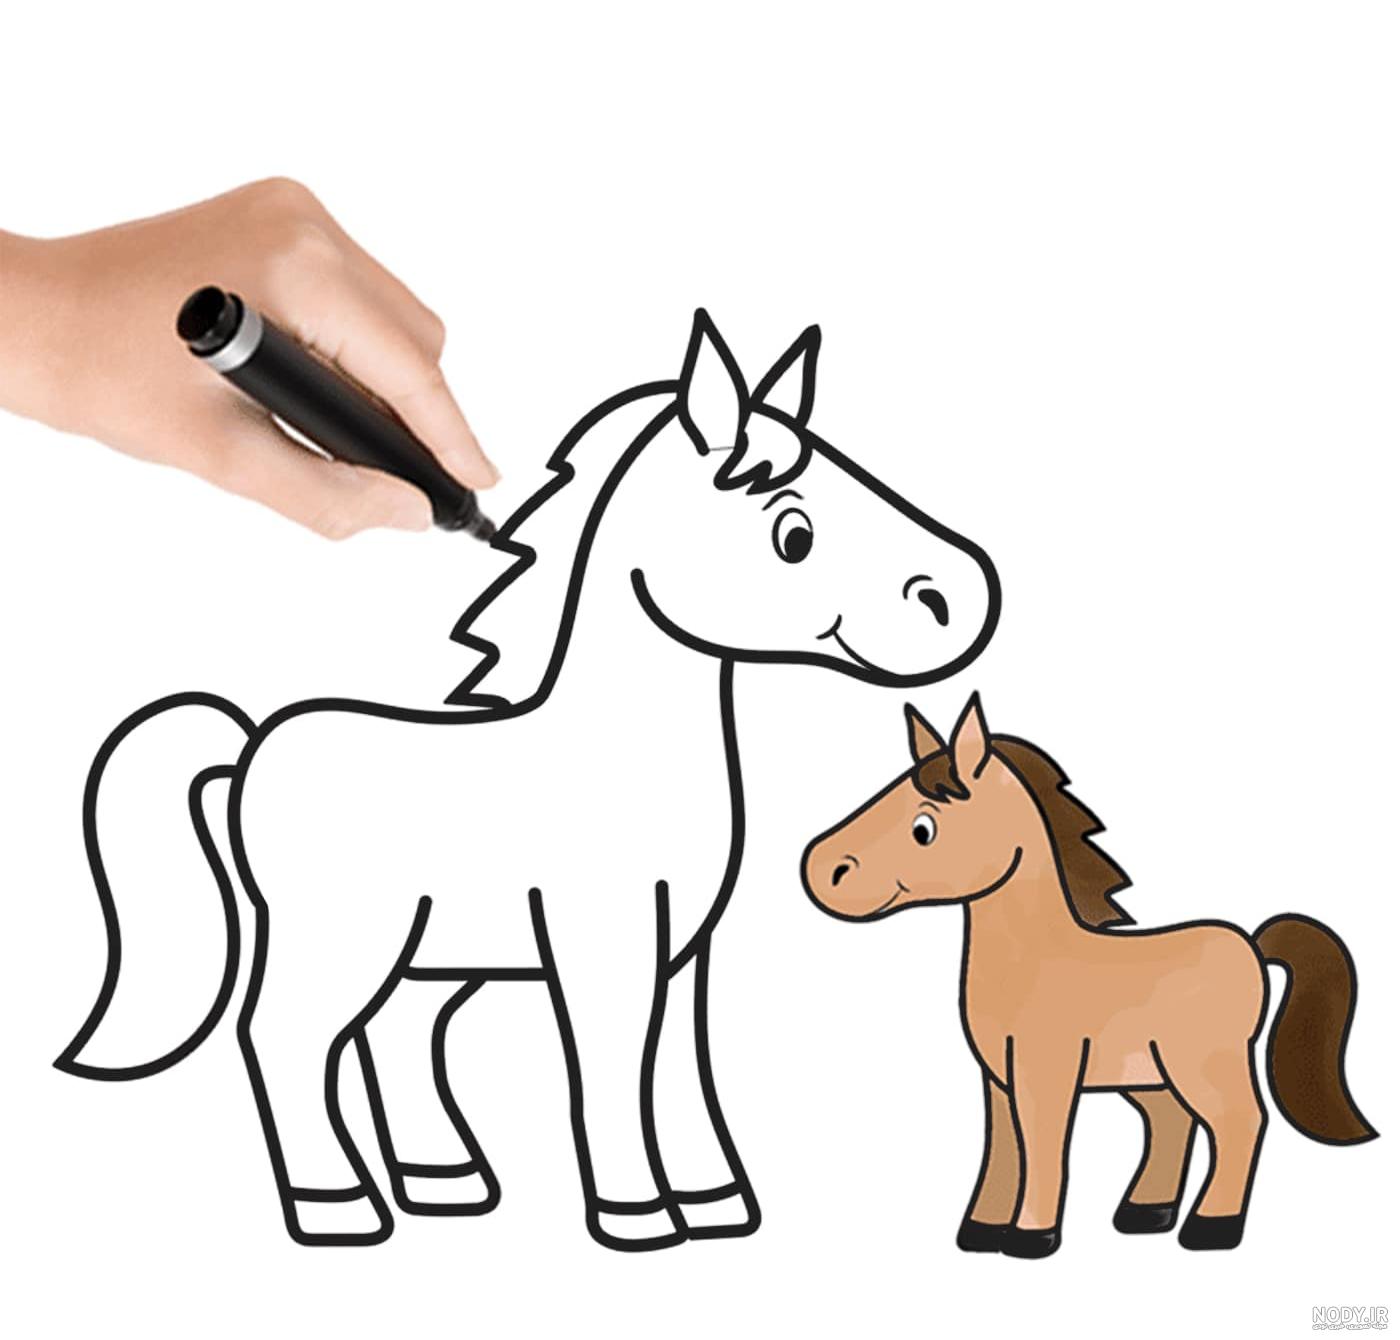 نقاشی اسب زیبا و آسان